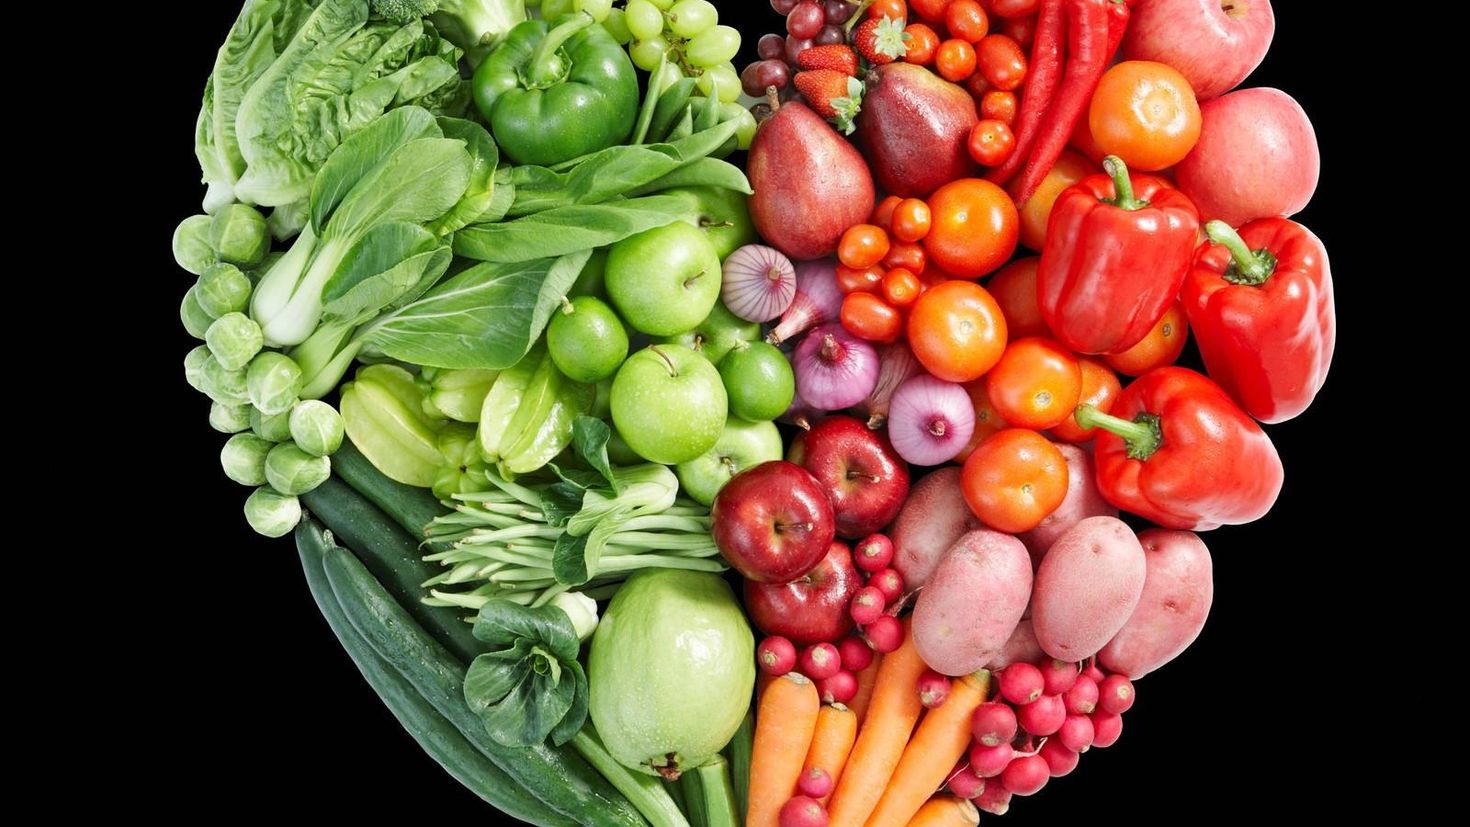 Frutas y verduras contra el estreñimiento